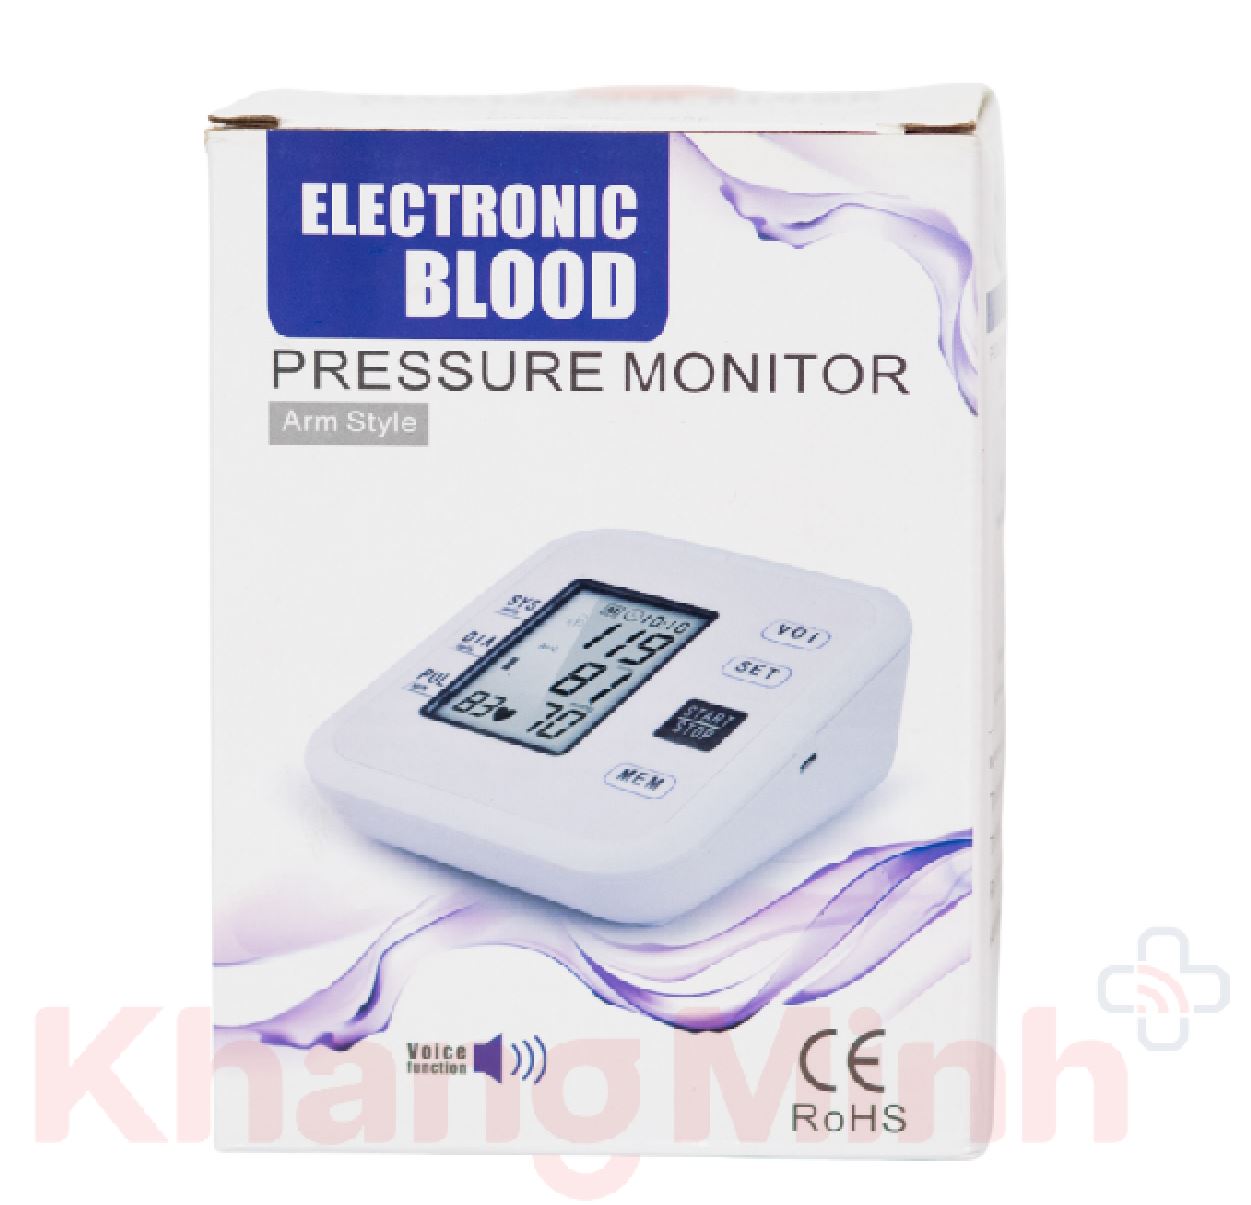 Giới thiệu về máy đo huyết áp bắp tay LXZ-B1681